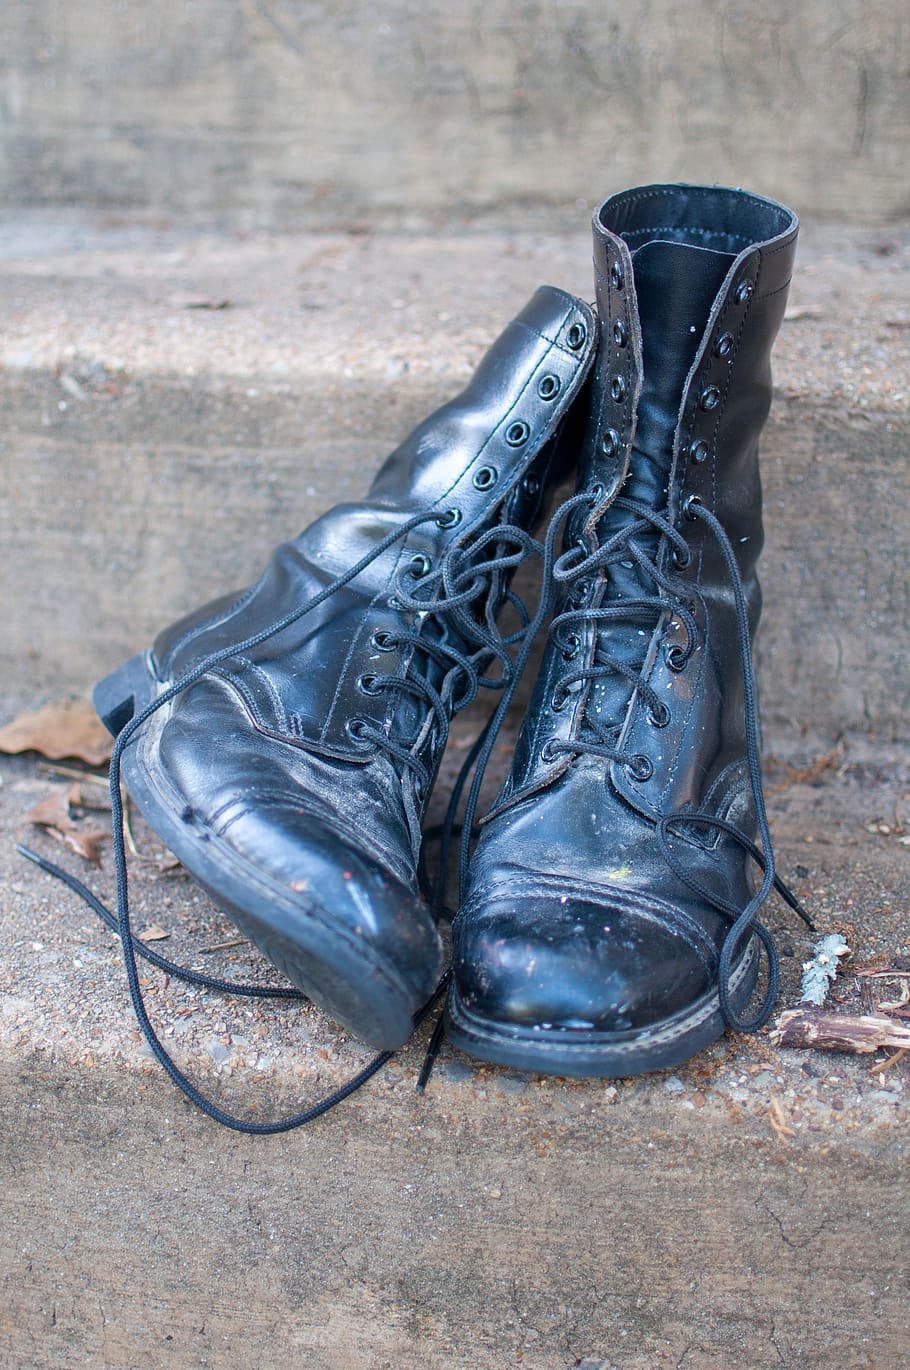 botas de combate, zapatos, militar, moda, viejo, ropa, negro, concreto, asfalto, pasos